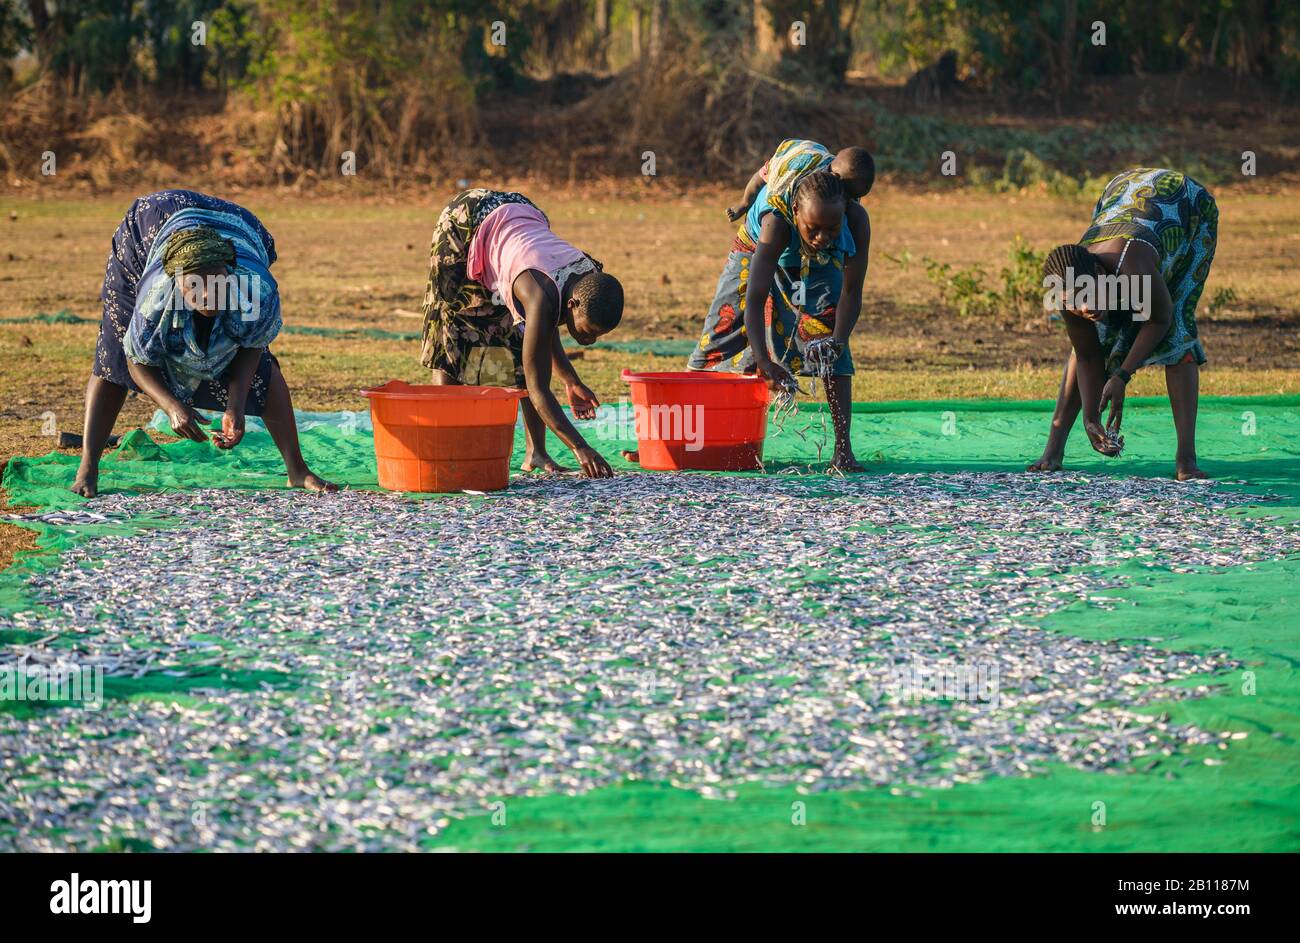 Las mujeres depositan pescado para secarlo en un mercado de pescado en el Lago Malawi, Malawi, África Foto de stock